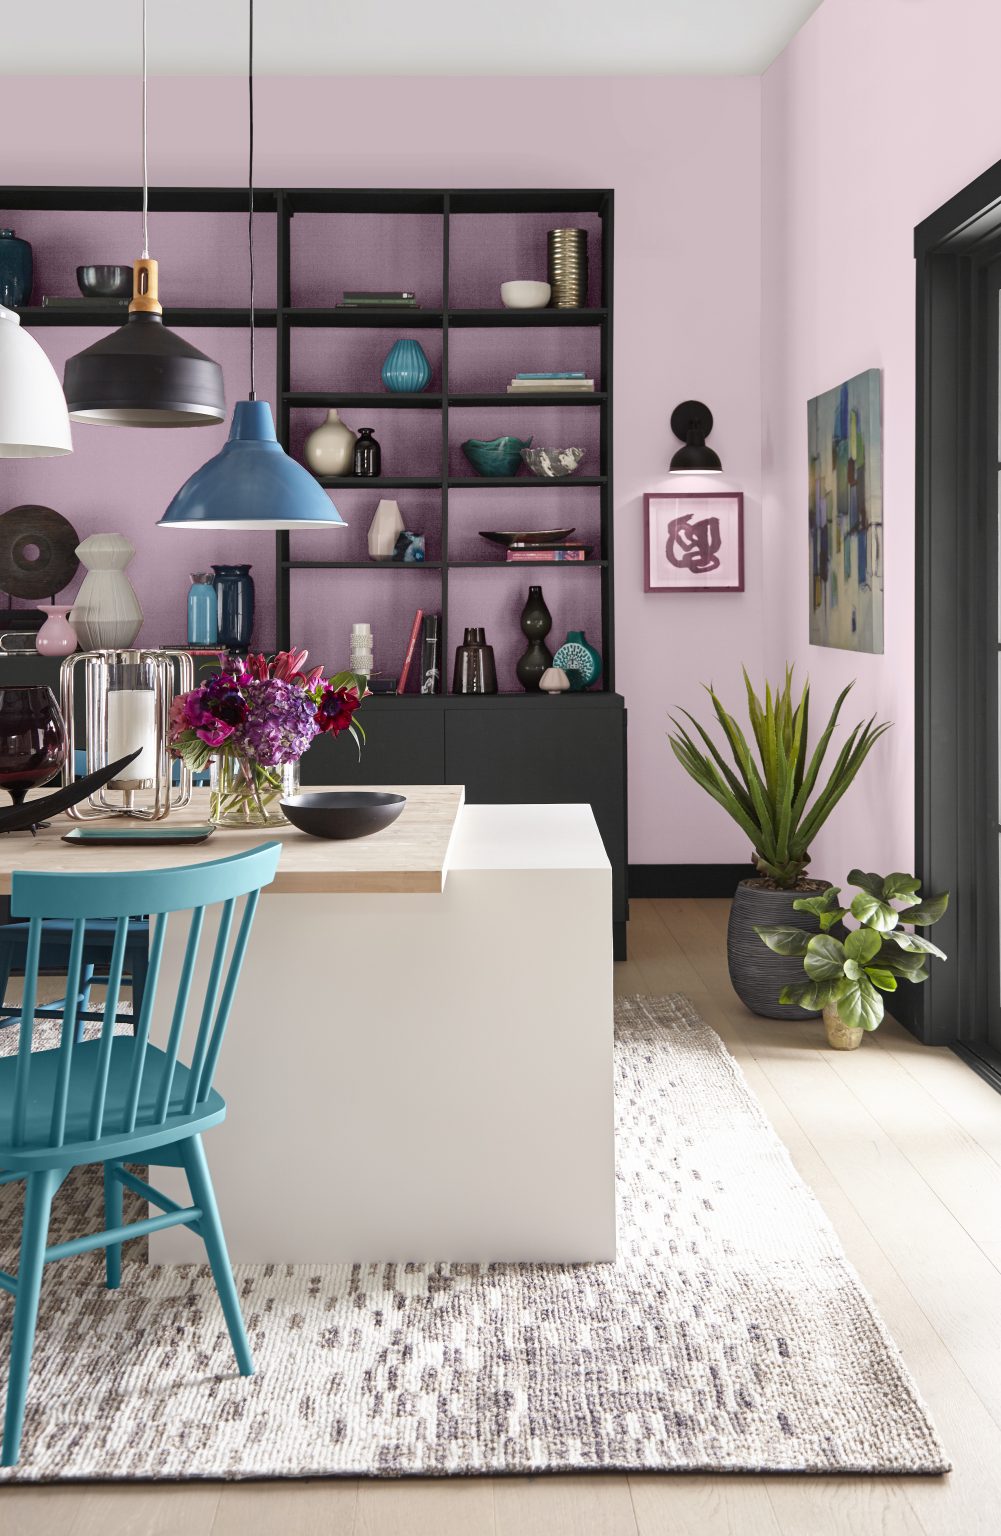 Une salle à manger avec des murs peints en rose-lavande et des armoires encastrées noires